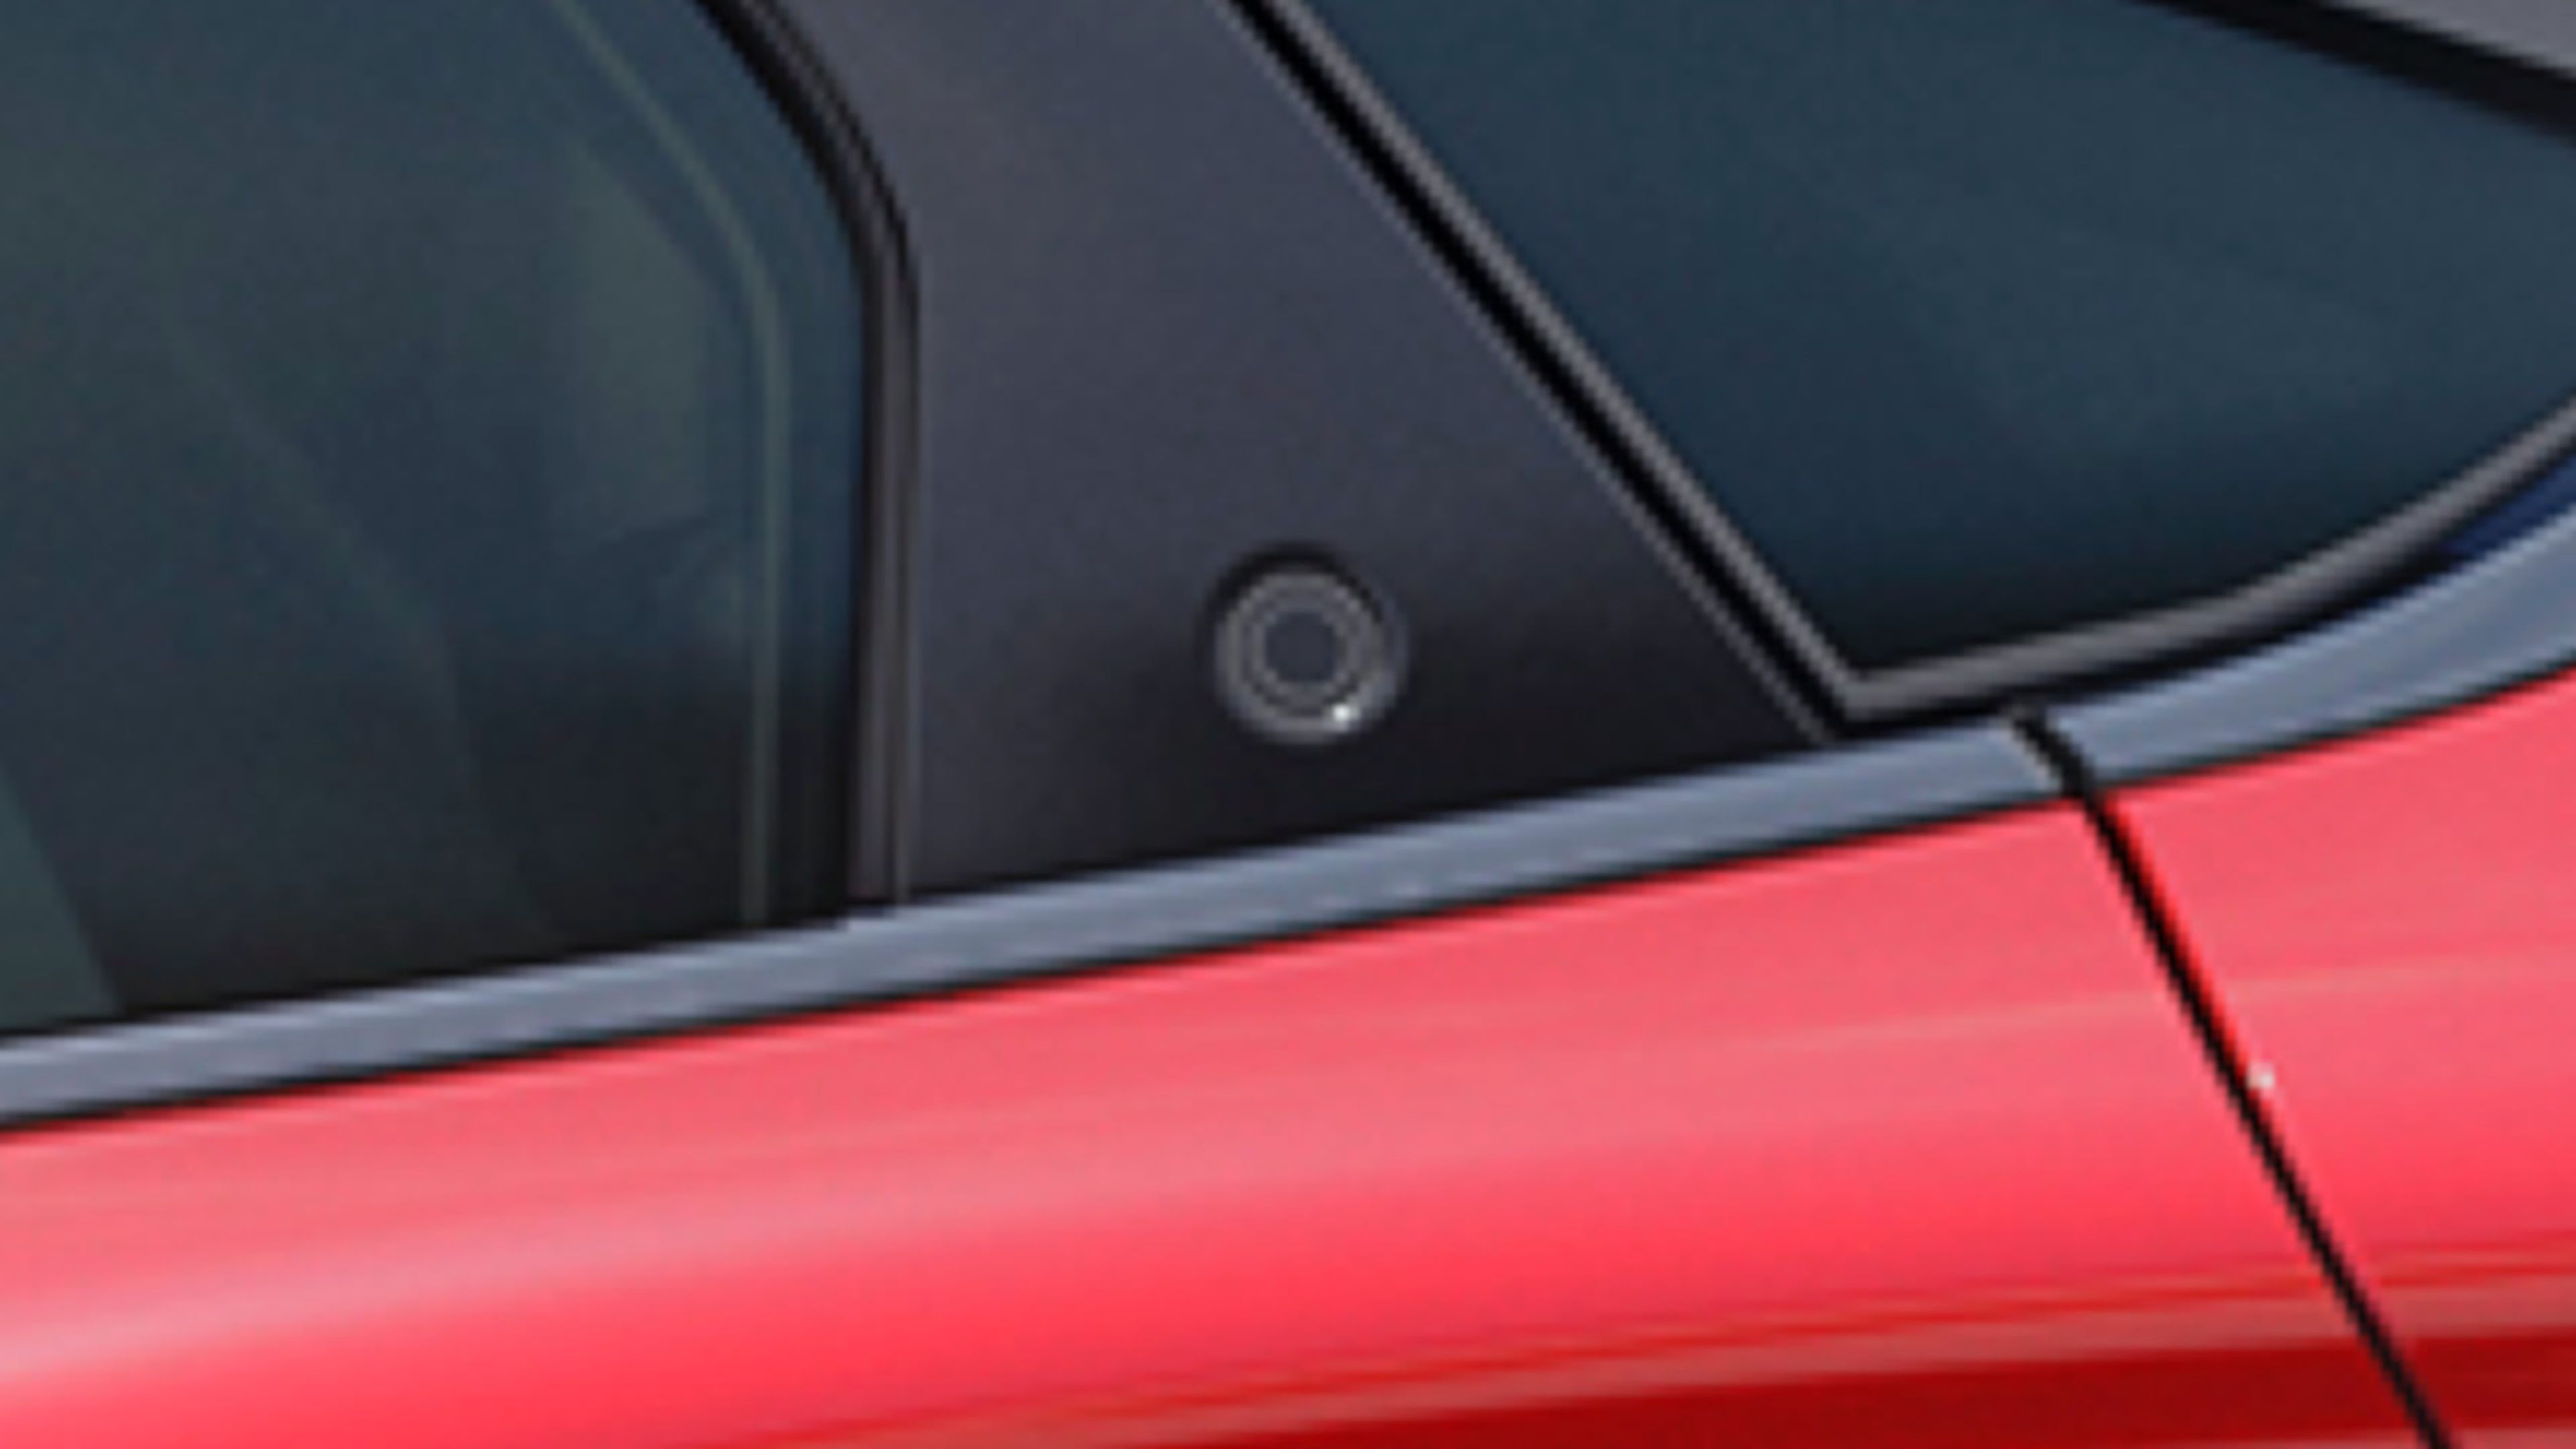 Detalle del pulsador de apertura de la puerta trasera del Mustang Mach-E.